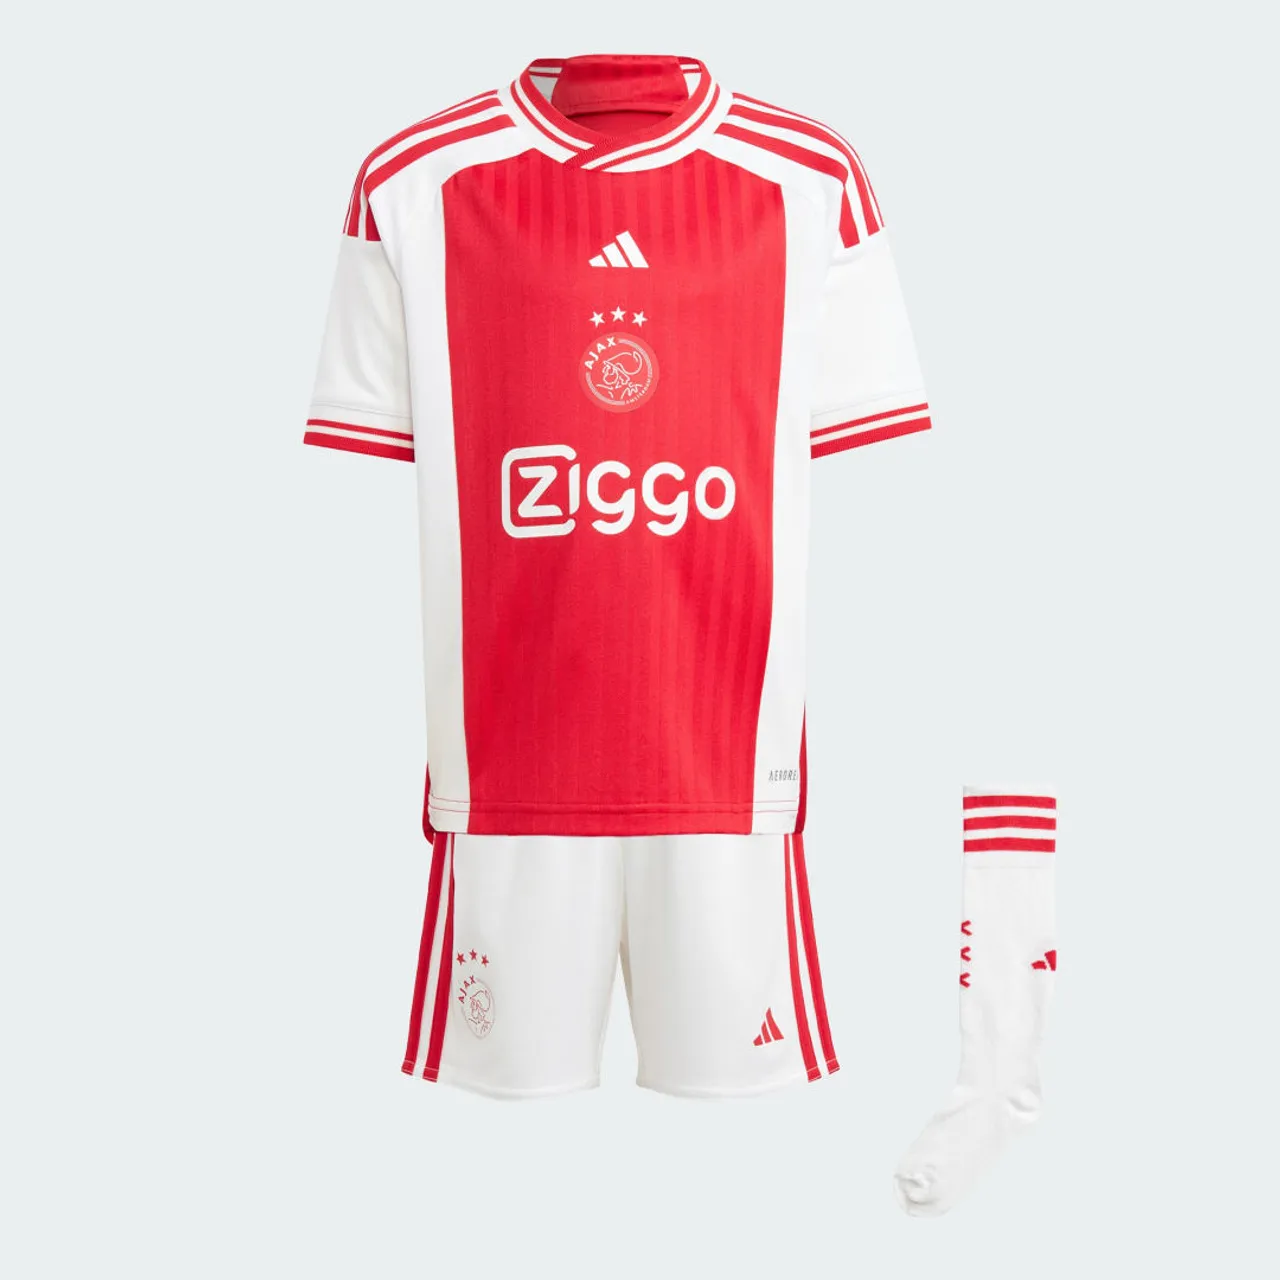 Ajax Amsterdam 23/24 Home Mini Kit